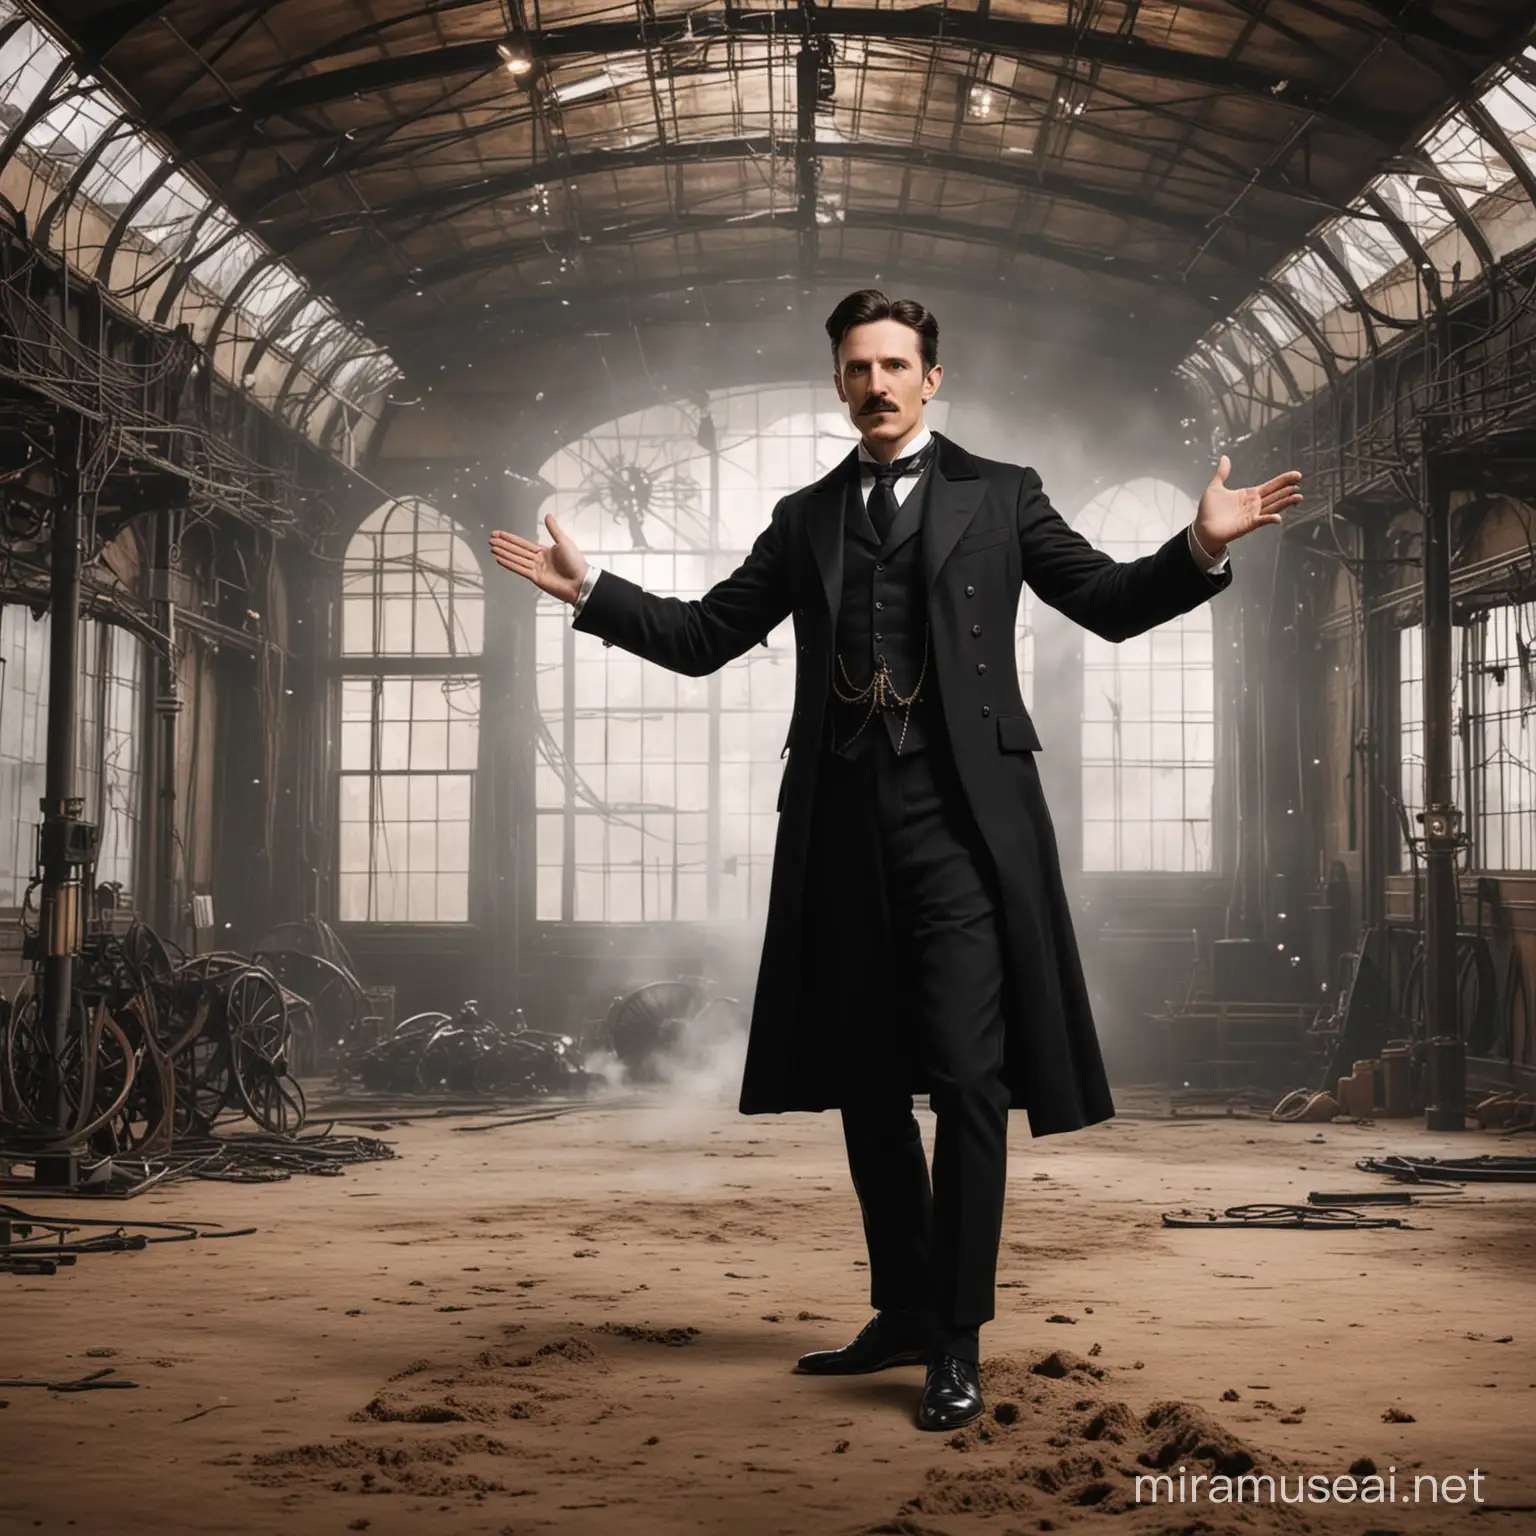 Nikola Tesla Standing in Front of Magnificent Indoor Scene from the 1800s